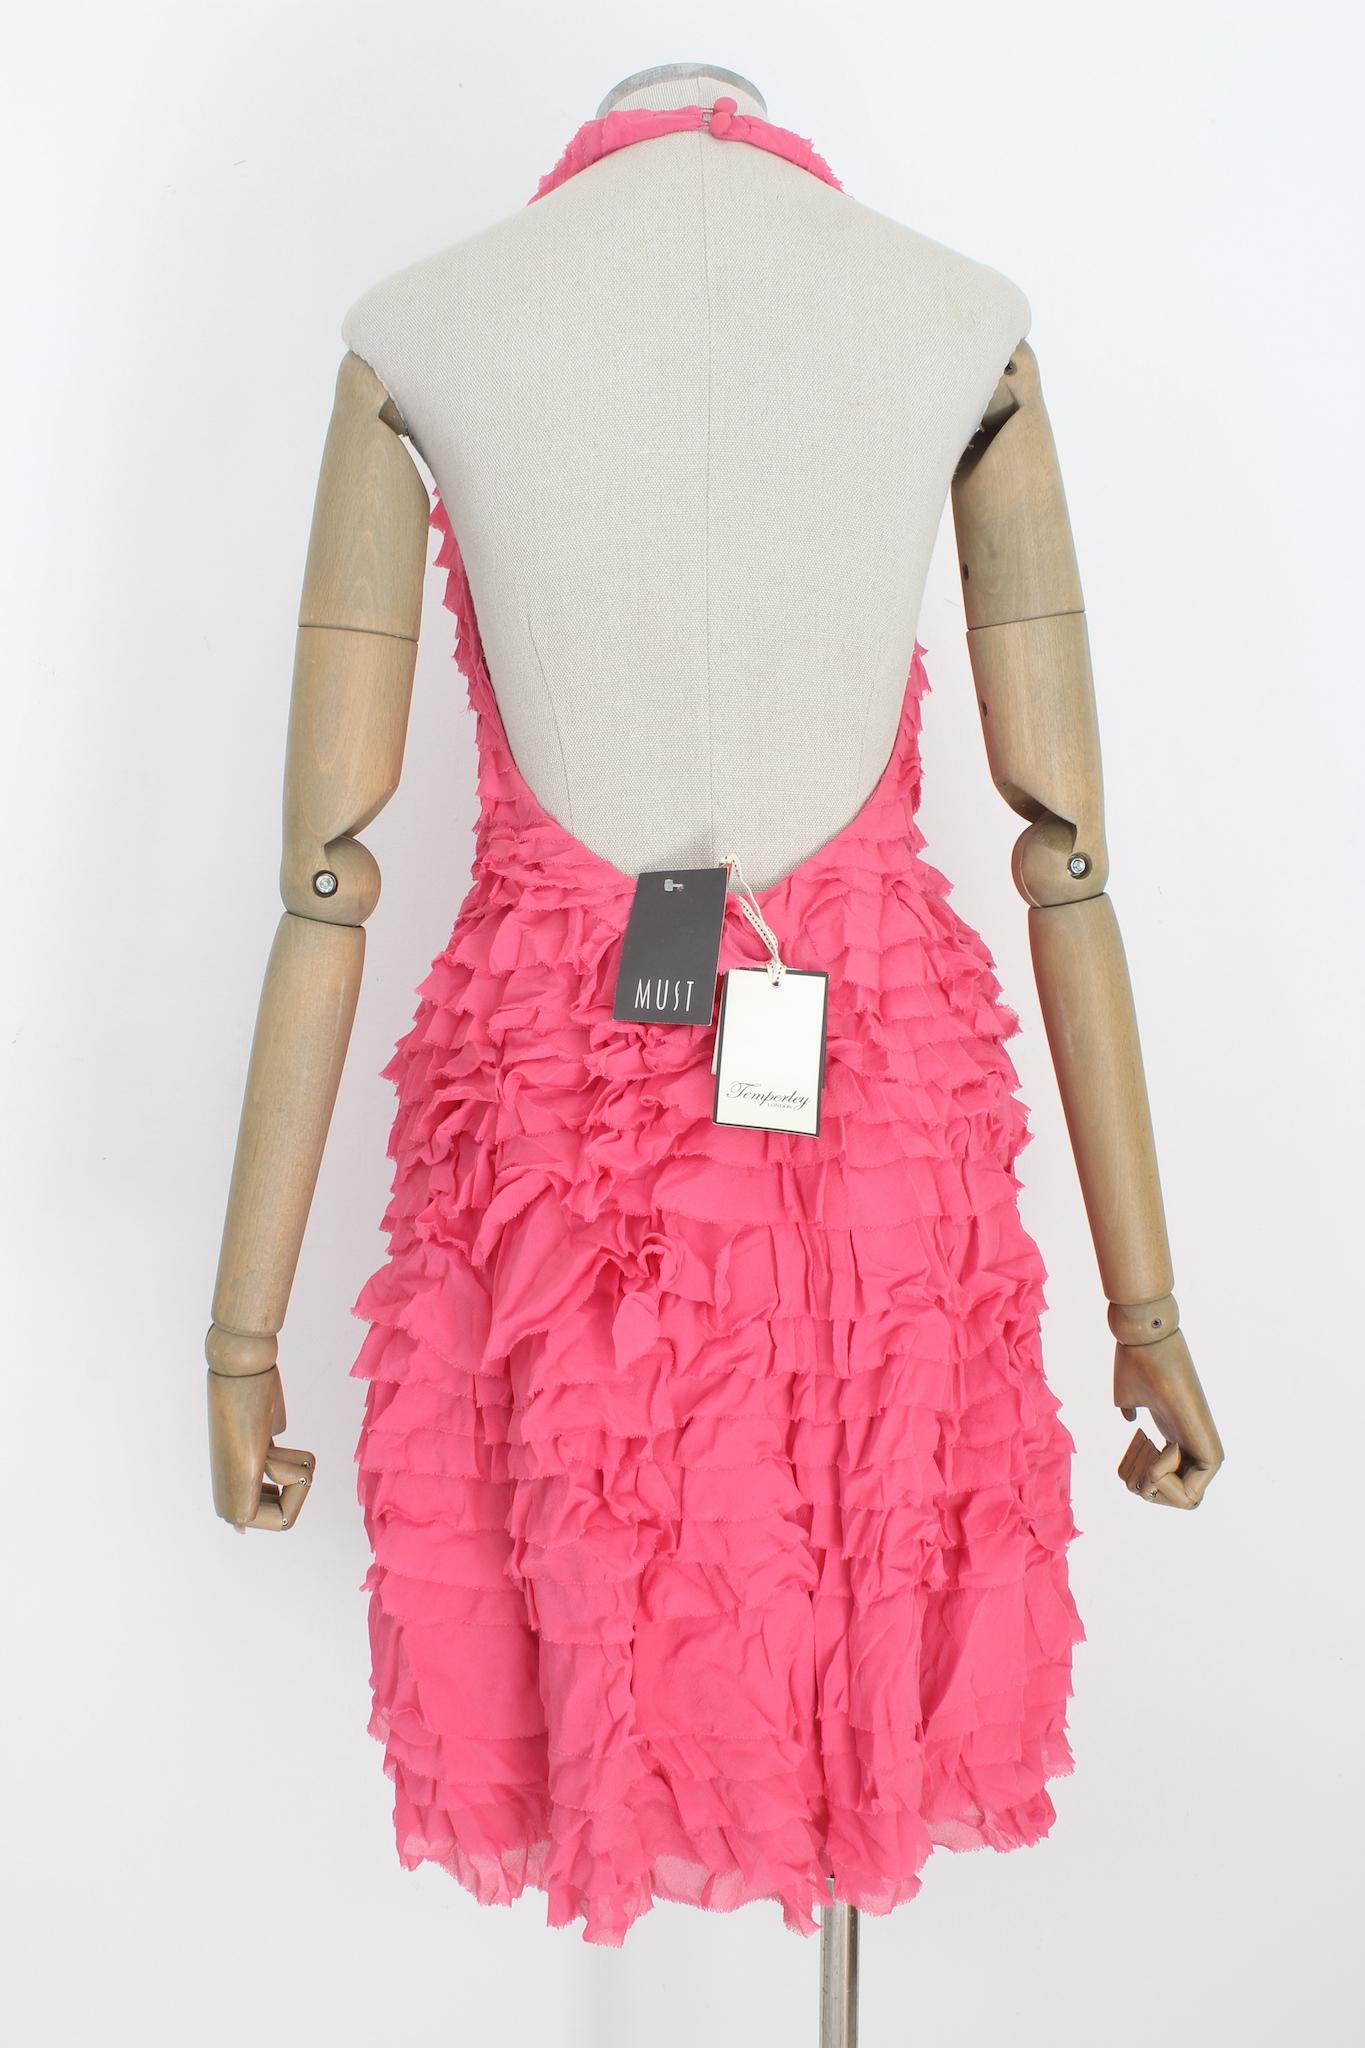 Temperley London 2000s rosa Cocktailkleid. Kleid mit Neckholder-Ausschnitt, schulterfrei. Mit Rüschen besetzt, seitlicher Reißverschluss, 100% Seidenstoff, innen gefüttert.

Größe: 40 It 6 Us 8 Uk

Oberweite/Brustumfang: 43 cm
Taille: 33 cm
Länge: